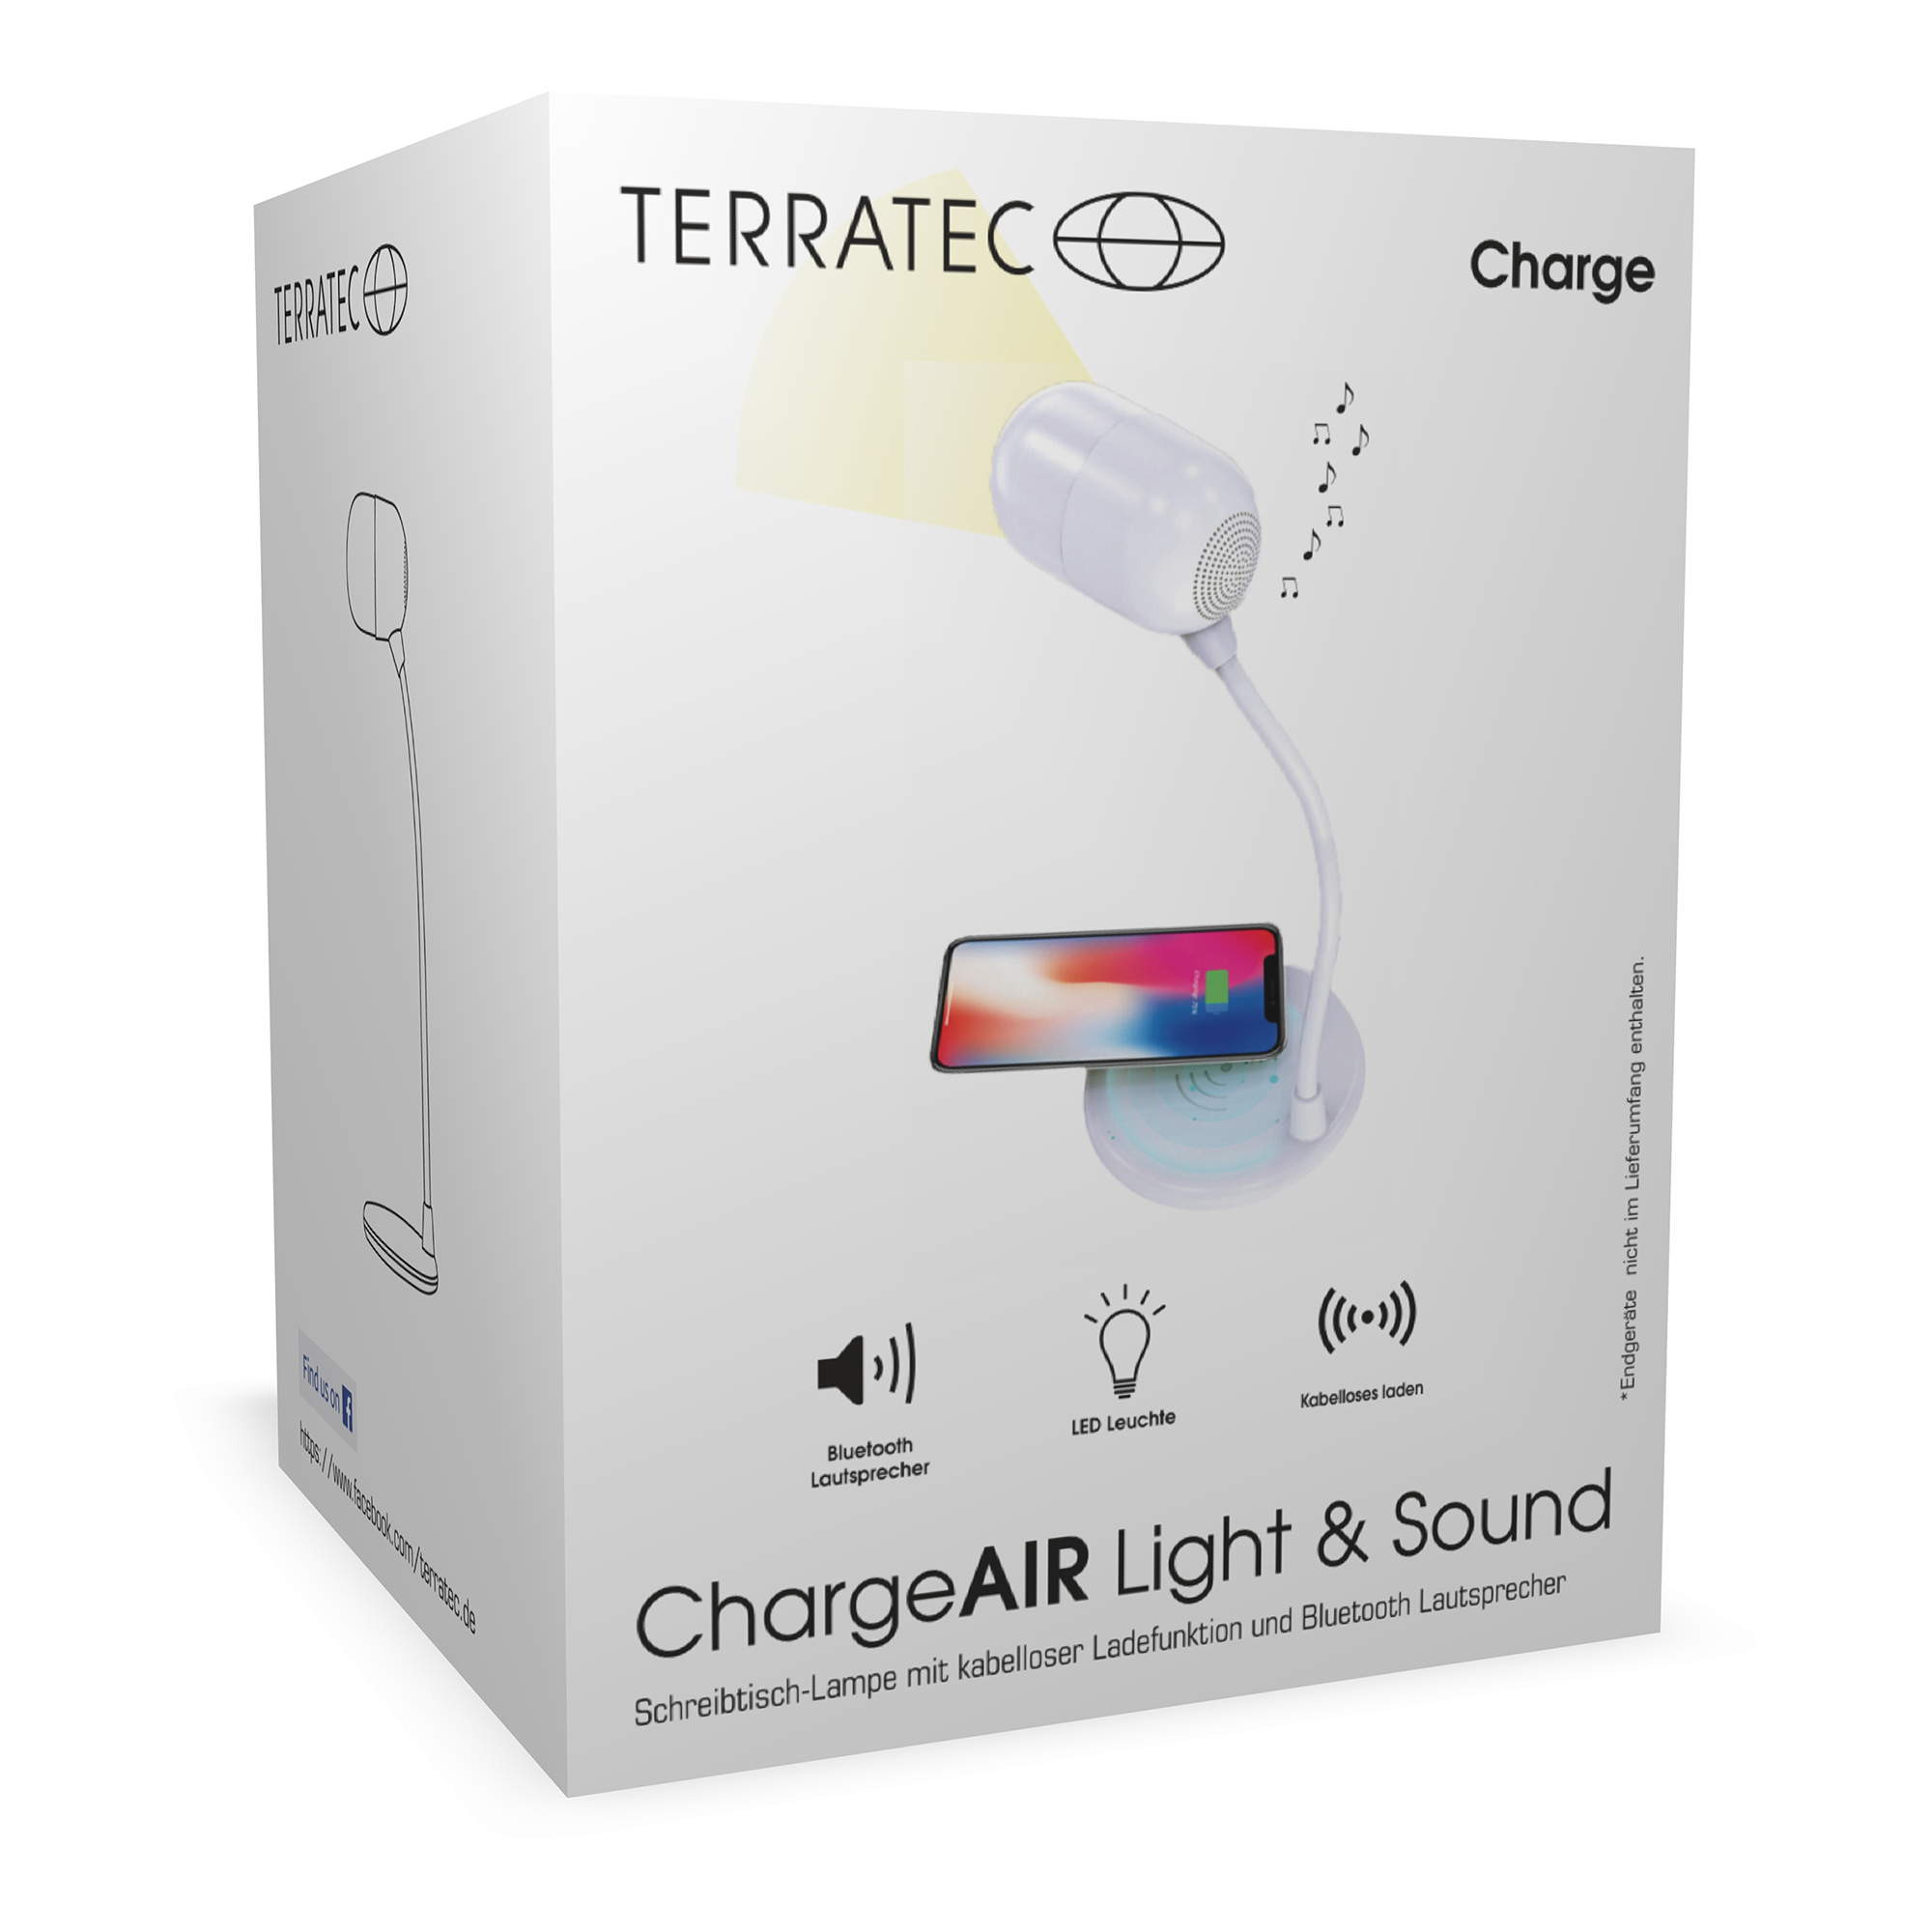 TERRATEC Charge AIR Light & Sound Schreibtisch-Lampe – Uns geht ein Licht auf